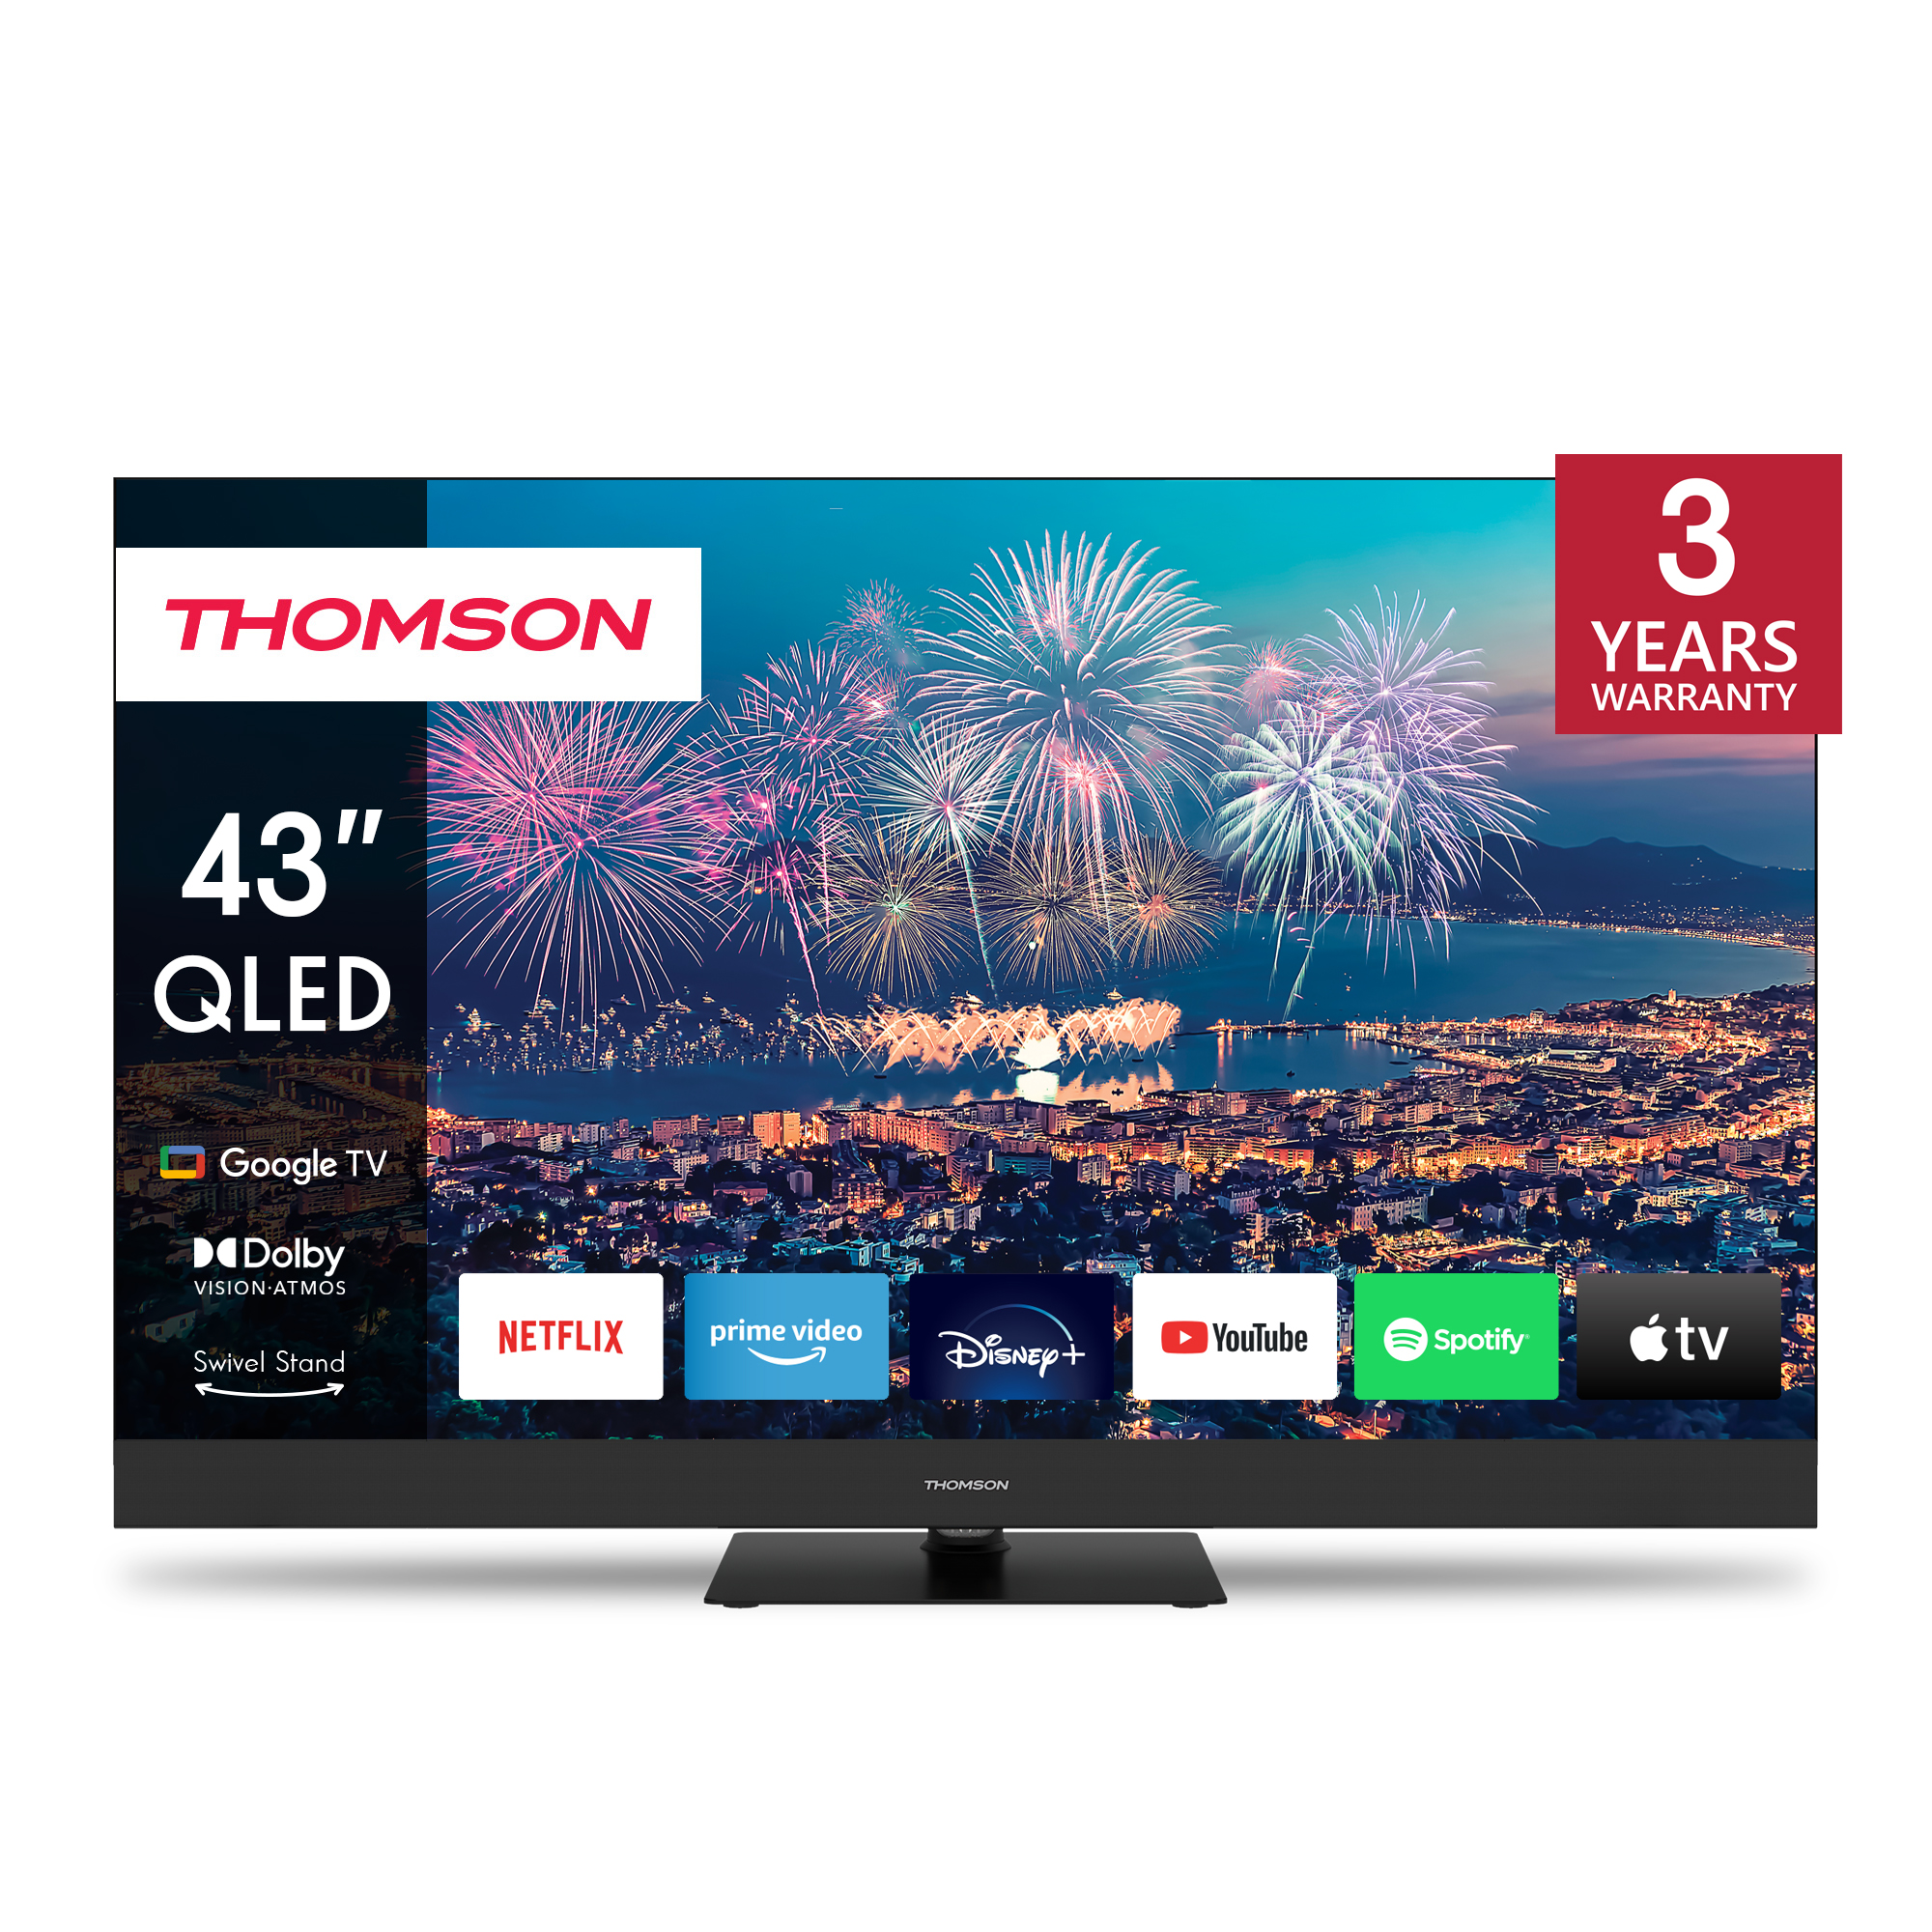 Thomson 43QG6C14 QLED Plus Google TV